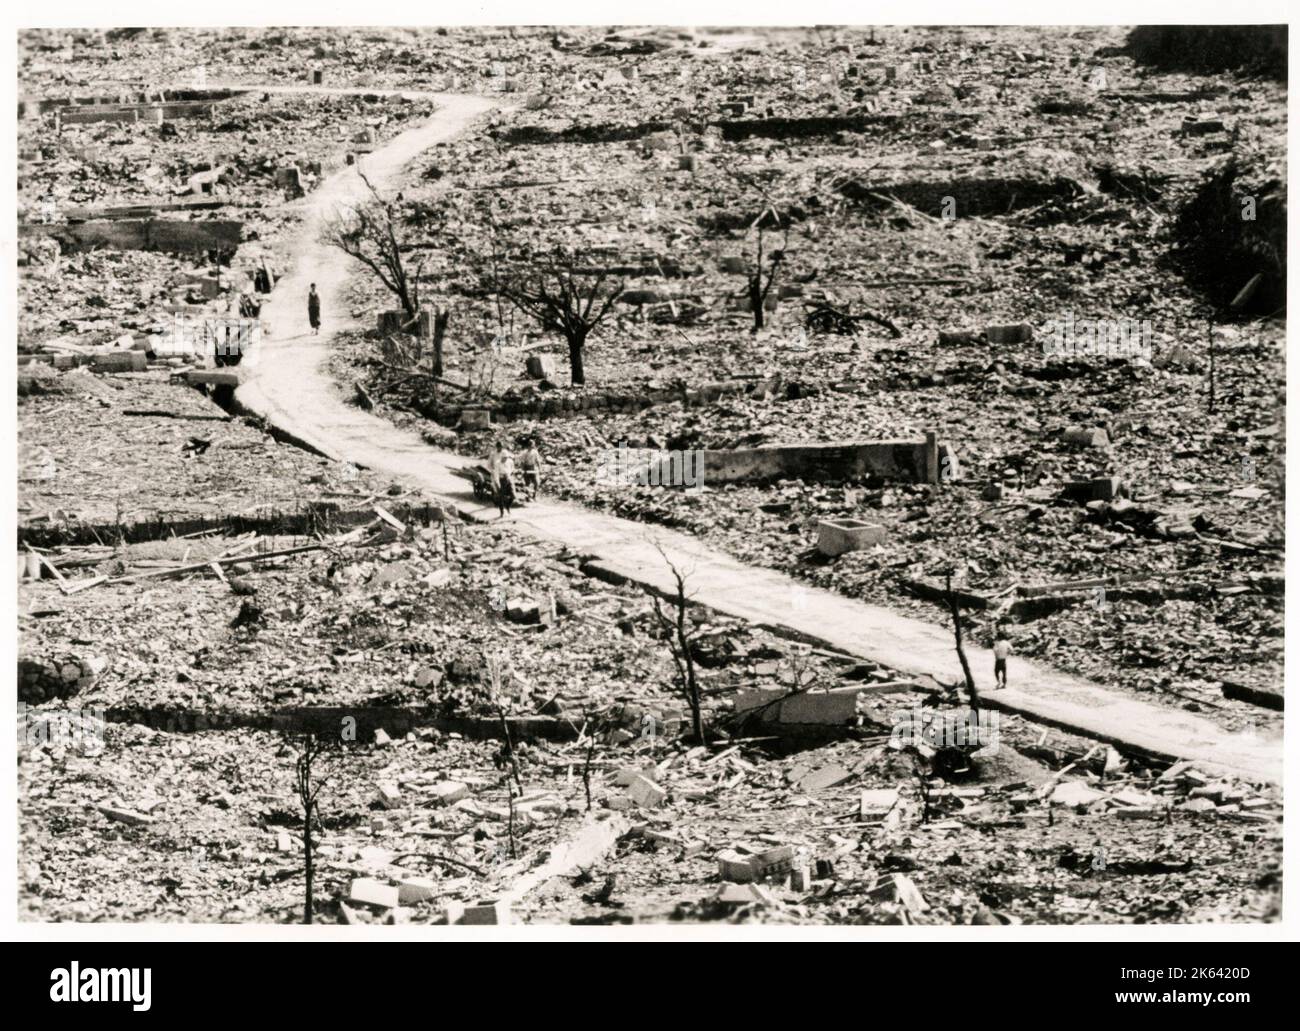 Rovine della città a seguito di esplosione nucleare - bomba atomica Giappone, seconda guerra mondiale 1945 Foto Stock